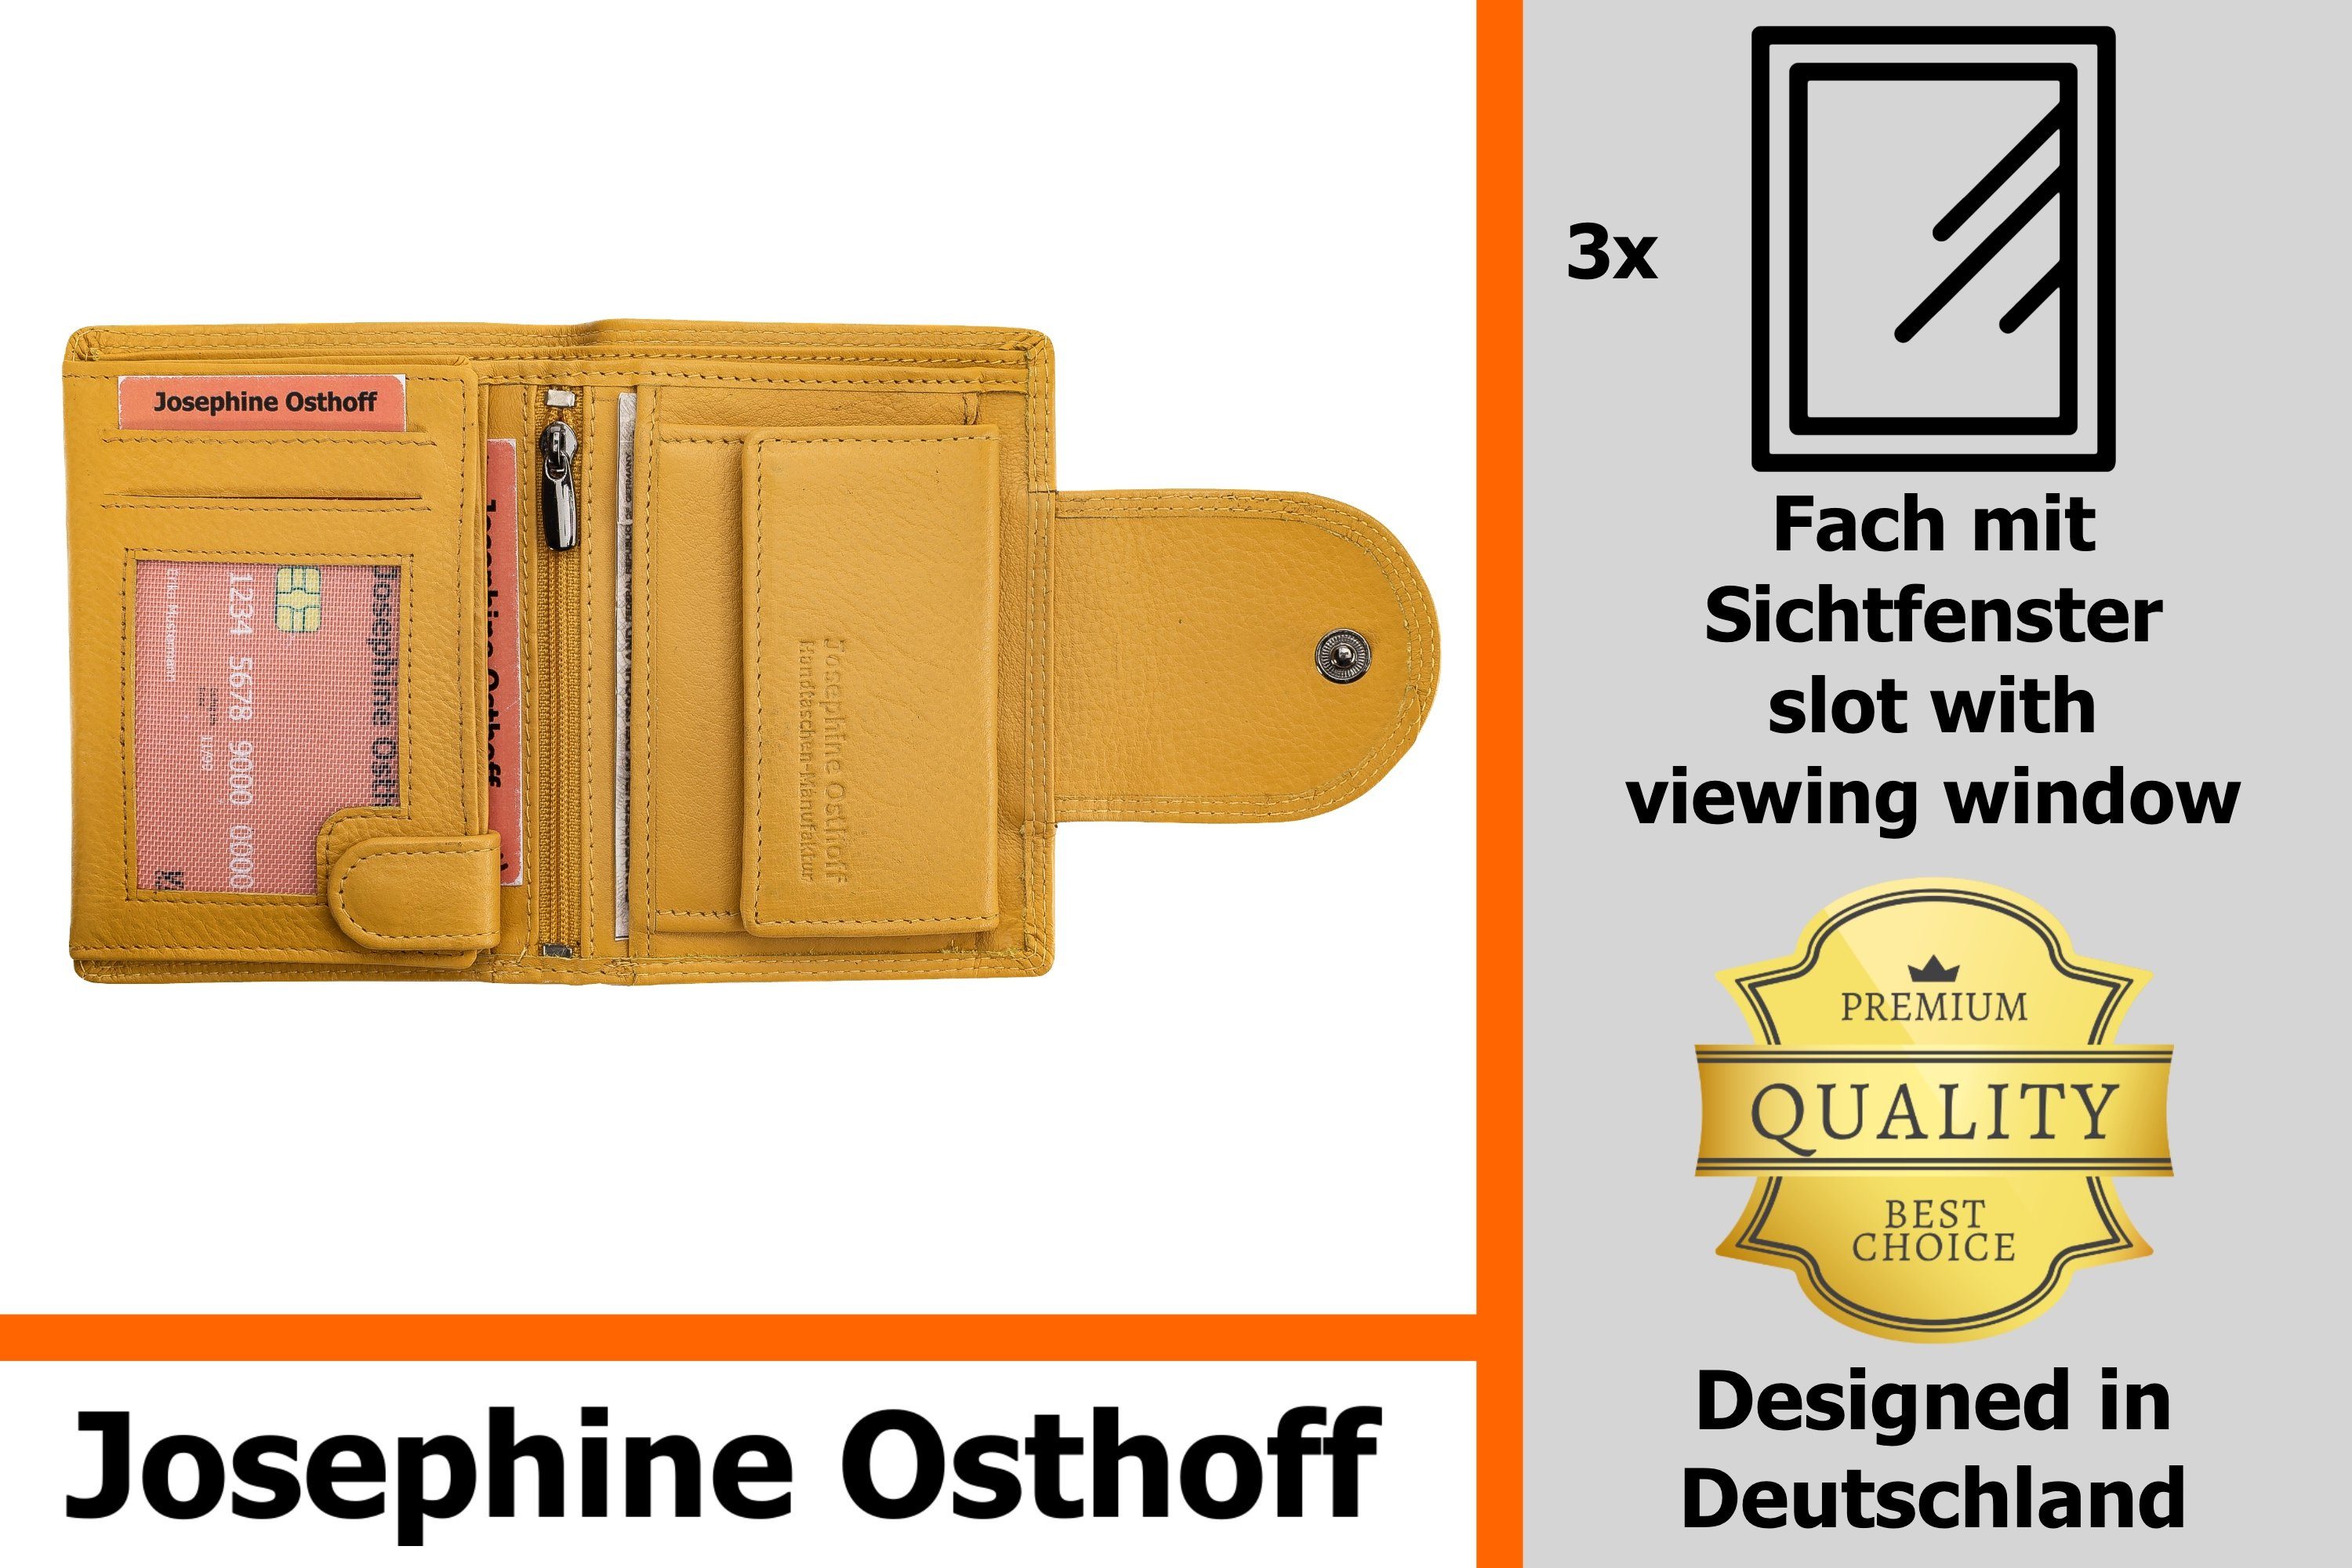 Josephine Osthoff Brieftasche Wiener Minibrieftasche Geldbörse gelb